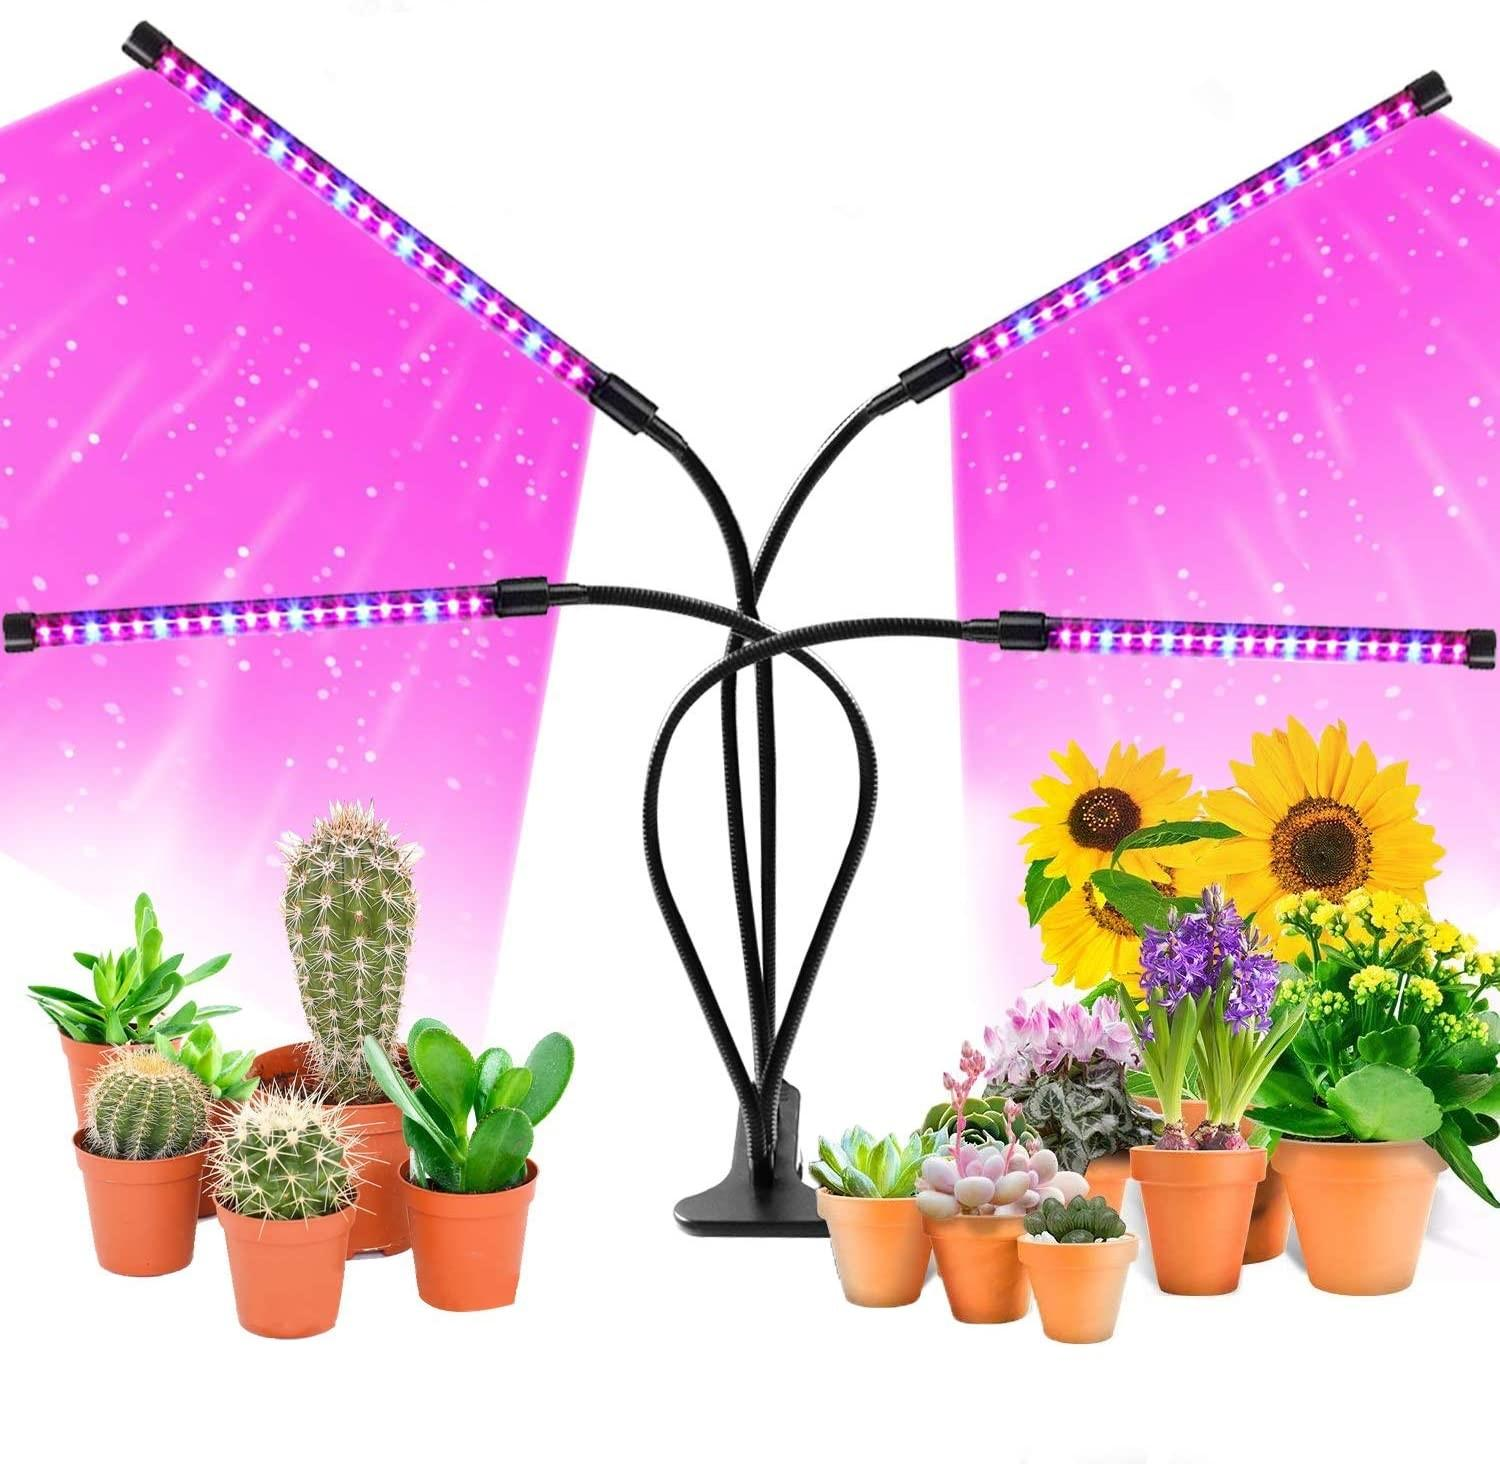 für LED-Lampe flexiblen für Pflanzenbeleuchtung Armen 4 mit Pflanzen / Pflanzen LED-Lampe INF